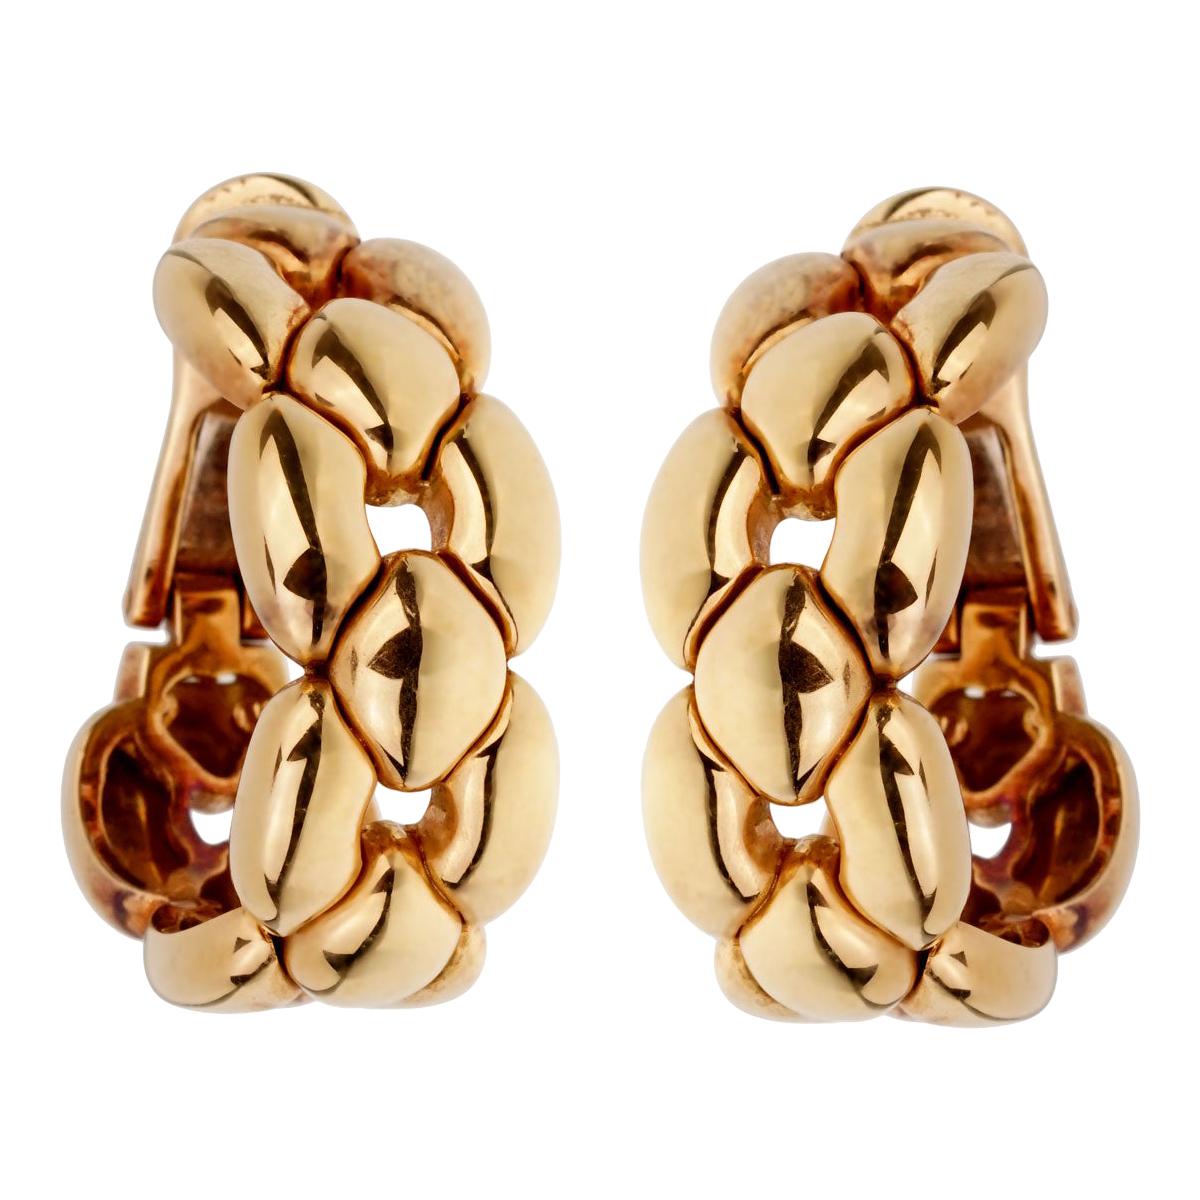 Magnifique ensemble de boucles d'oreilles Cartier en or jaune 18 carats. Les boucles d'oreilles mesurent 0,50